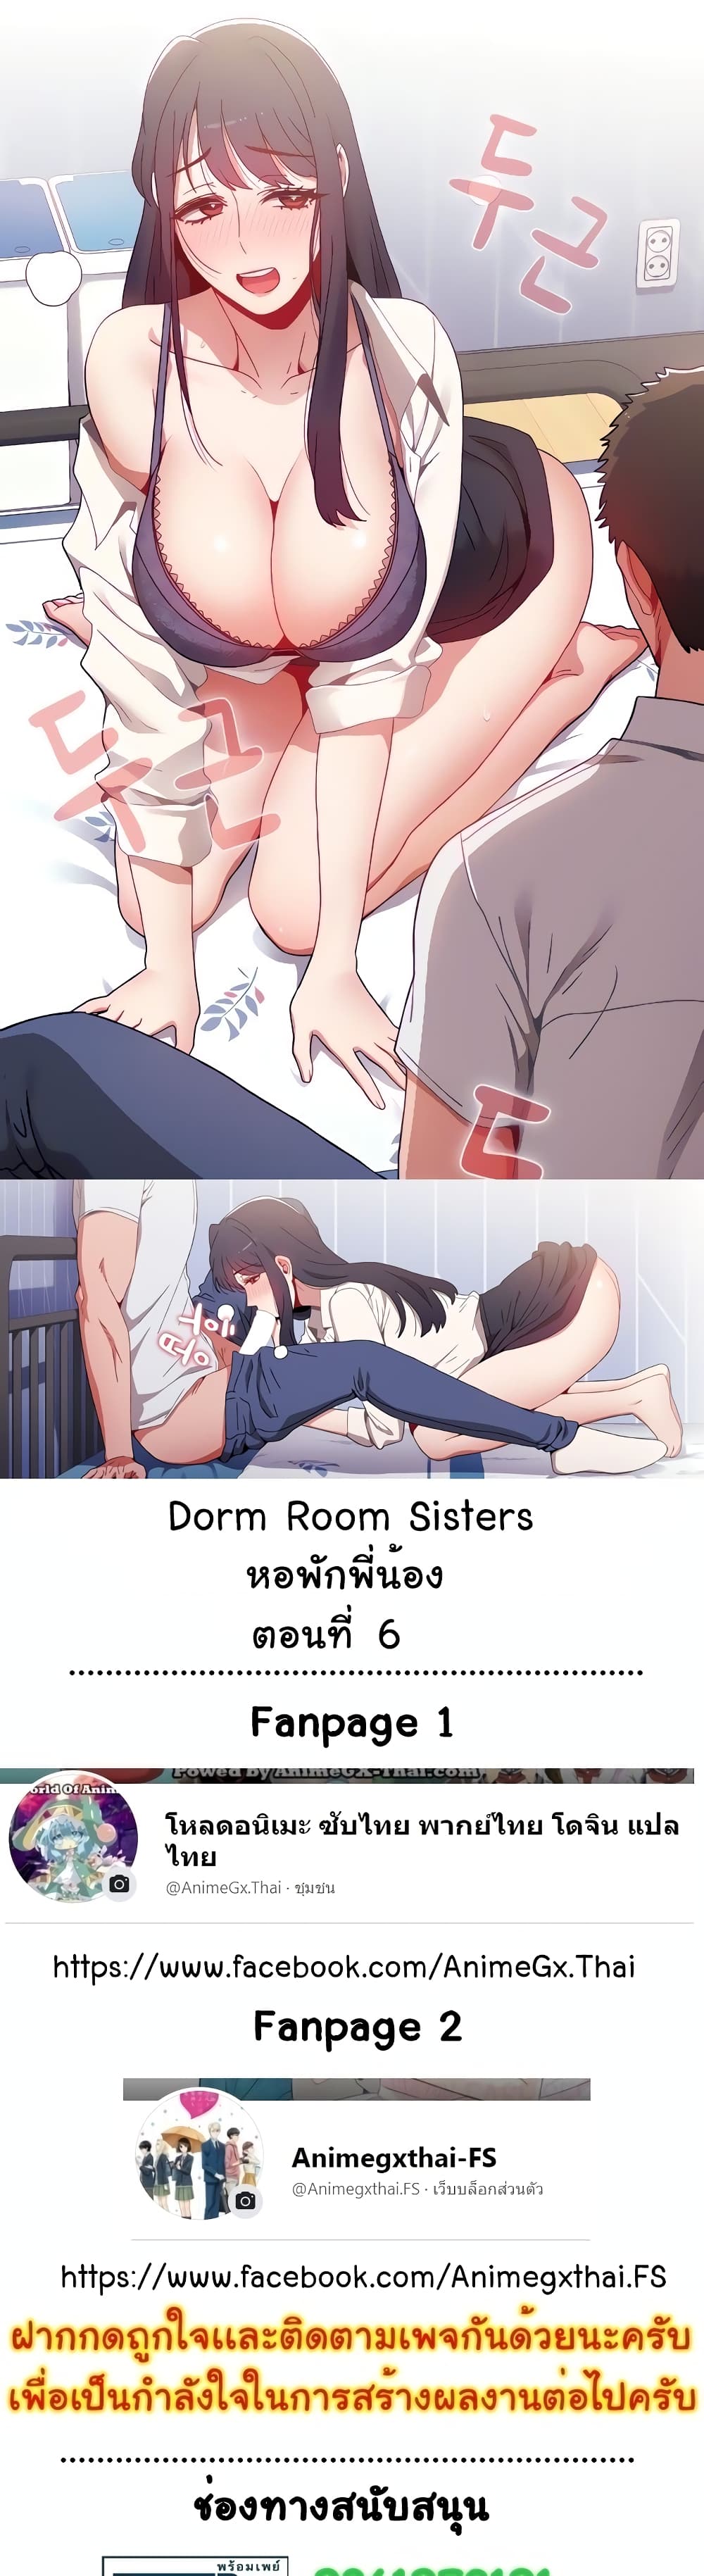 Dorm-Room-Sisters-6_01.jpg